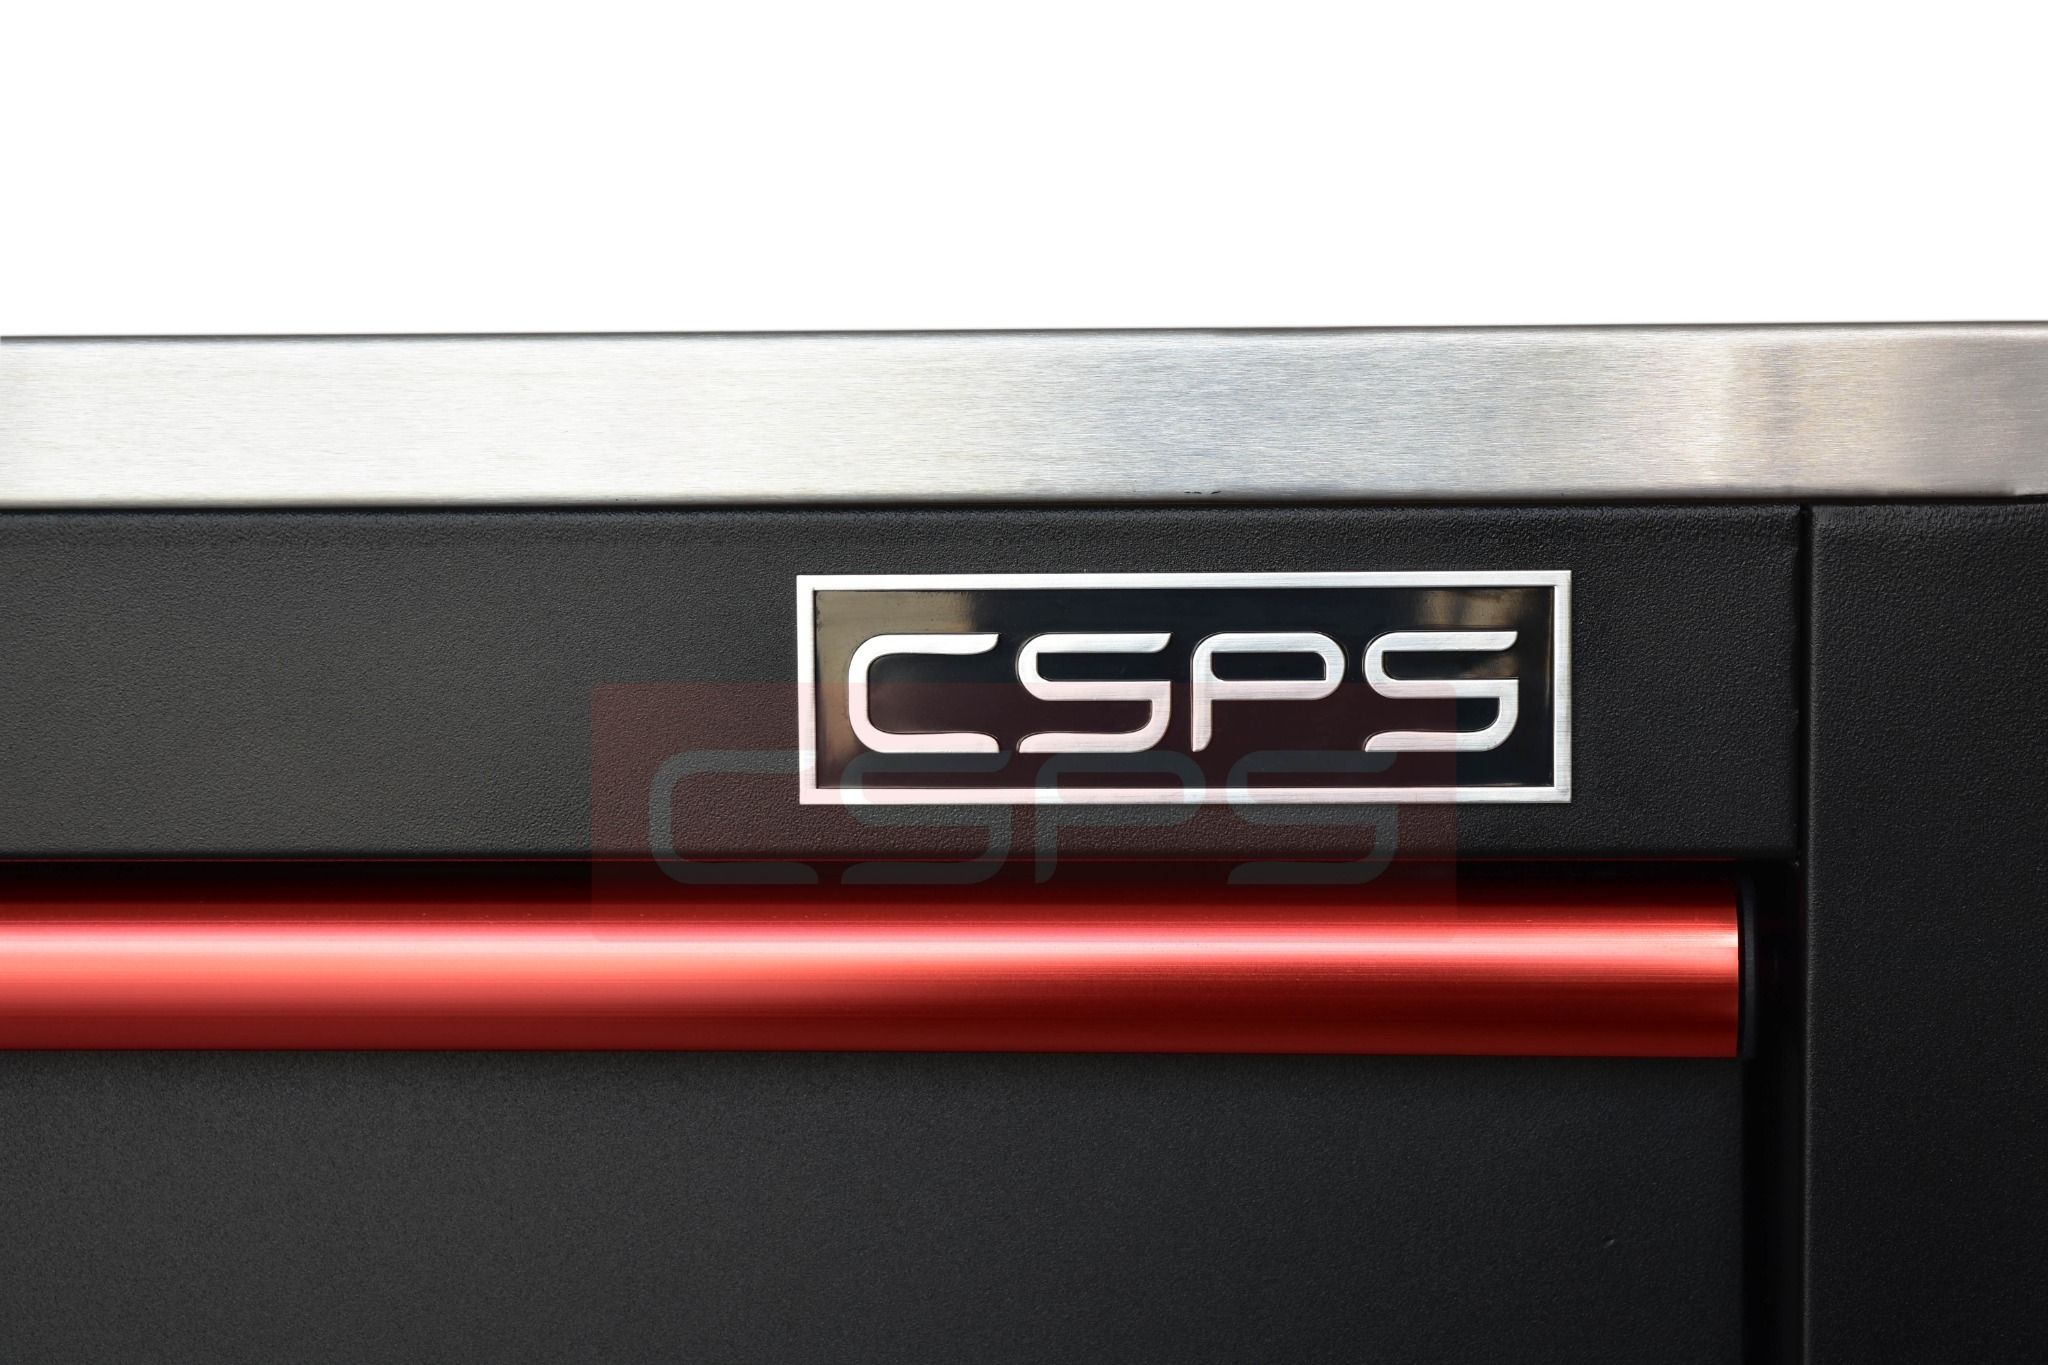  Tủ dụng cụ CSPS 132cm - 05 hộc kéo màu đen/trắng 